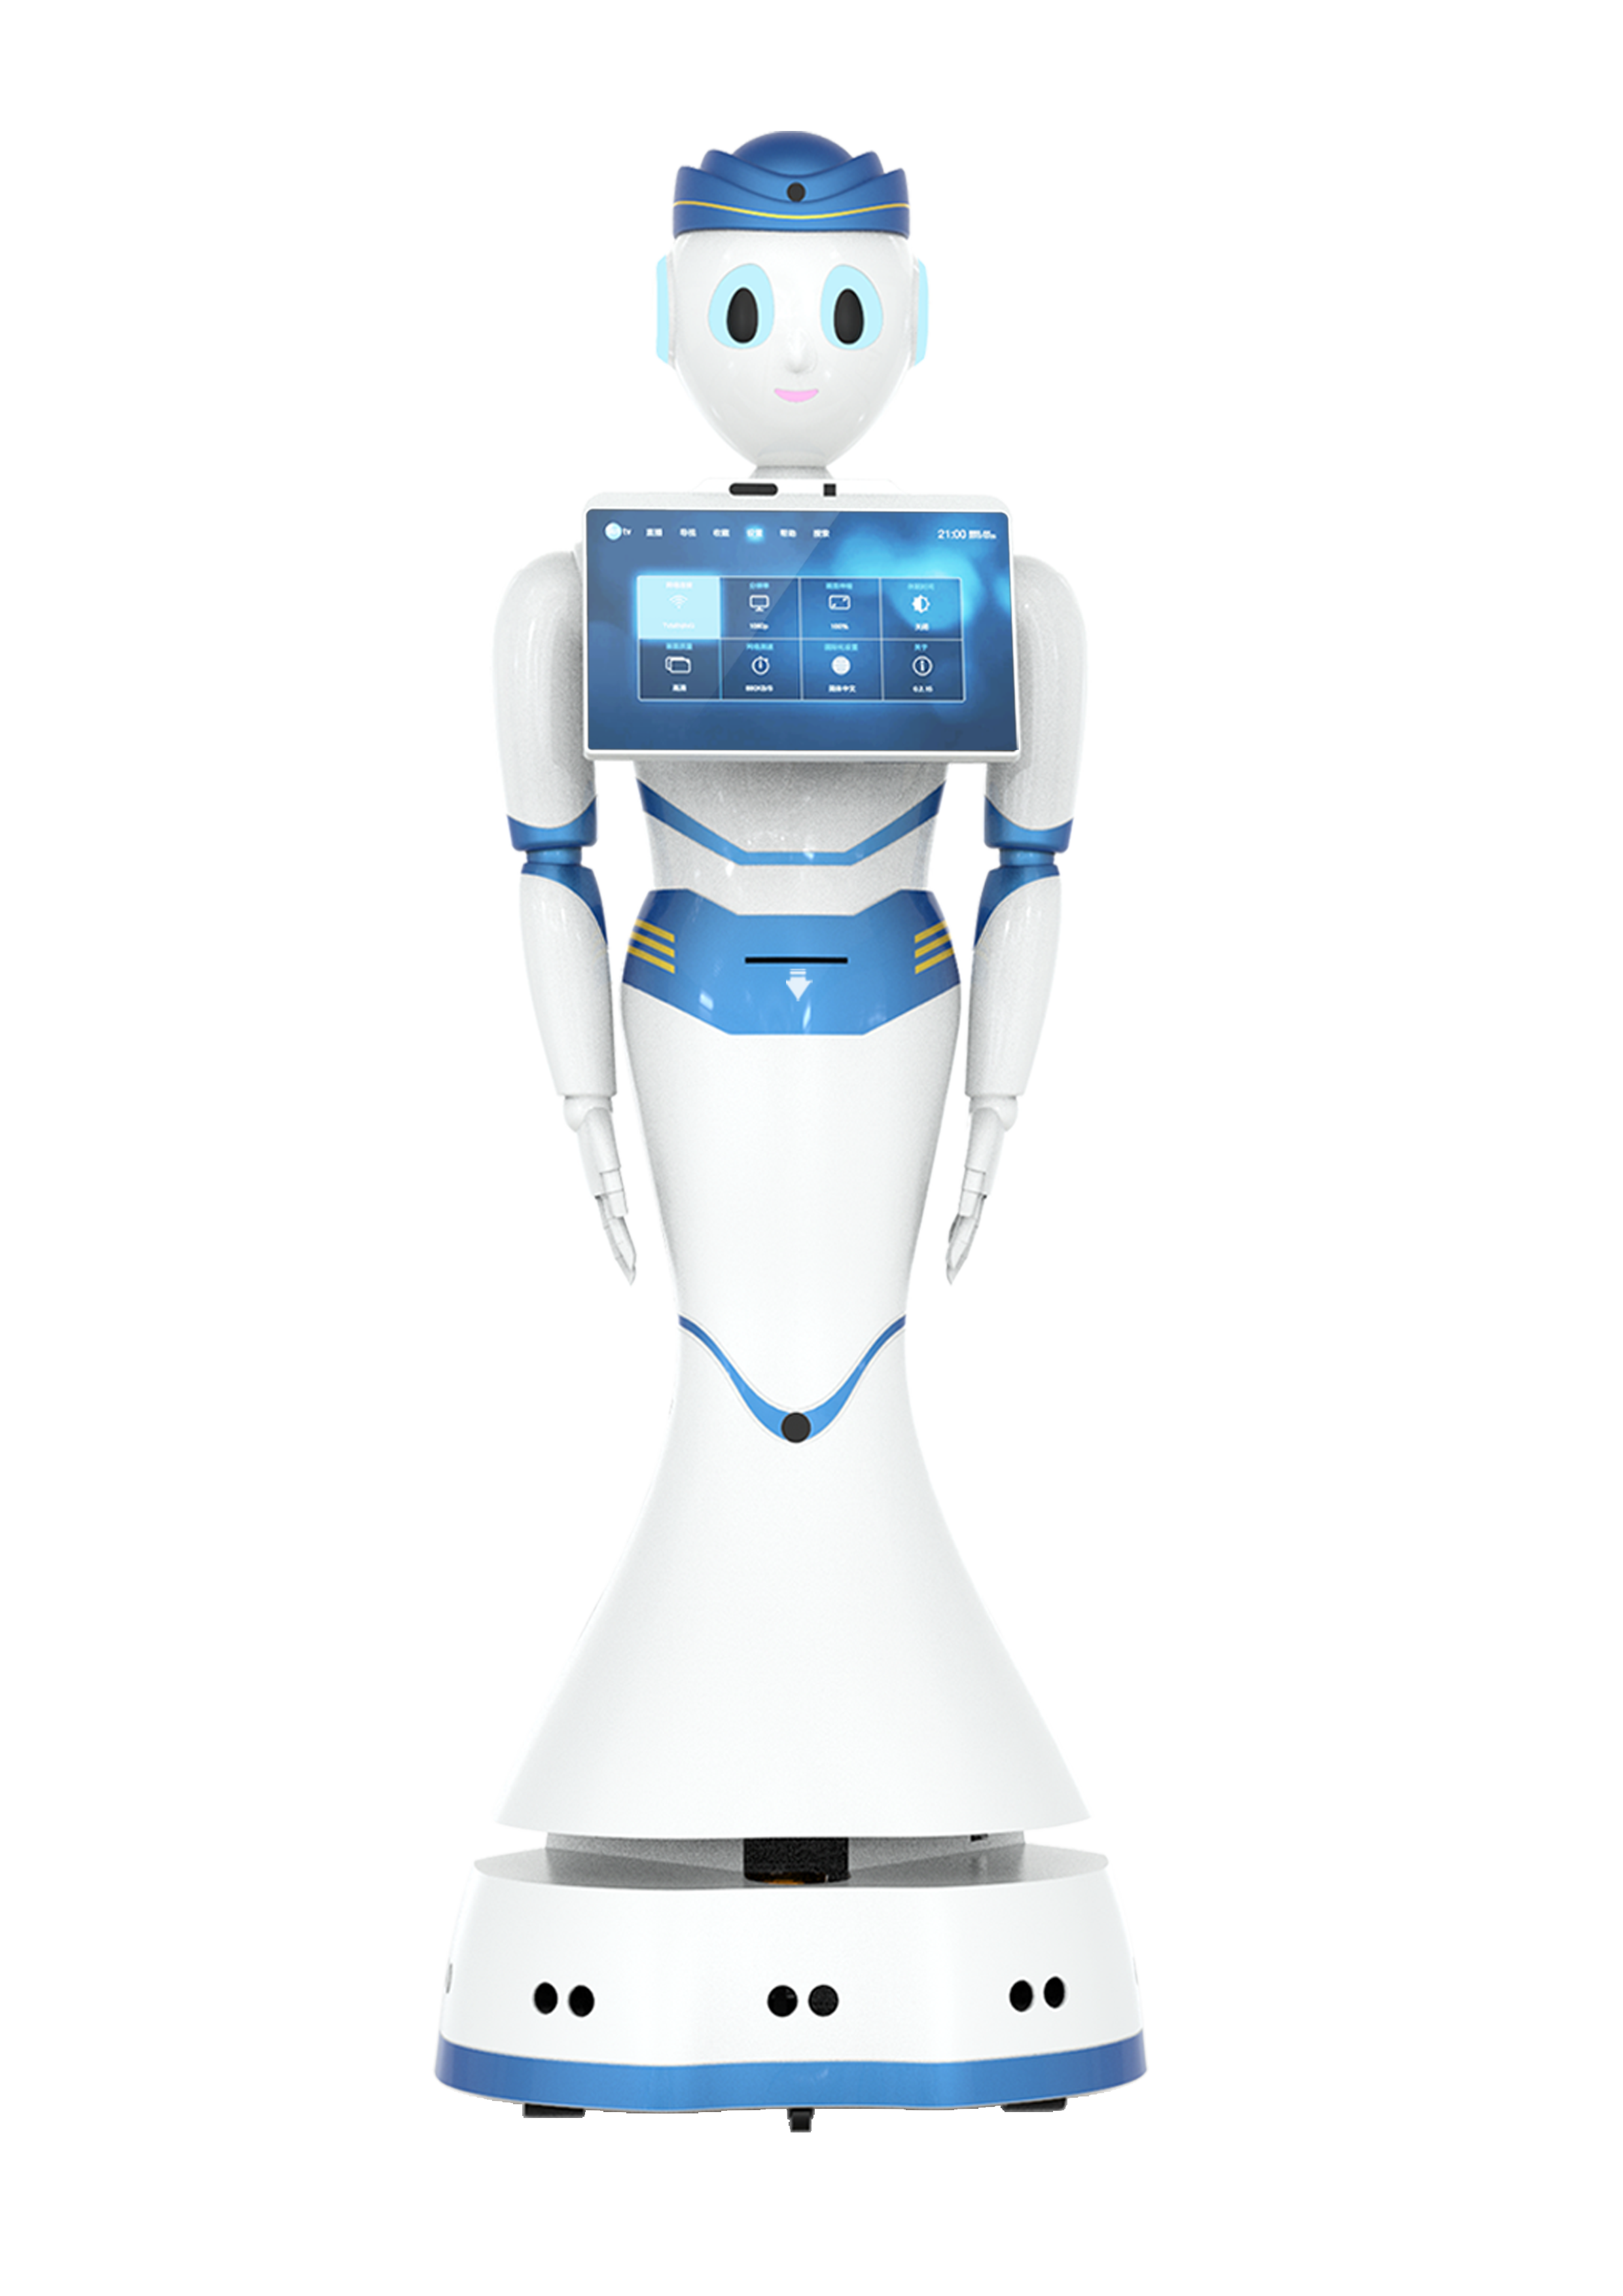 锐曼品牌  人工智能AI机器人  RMB-102系列